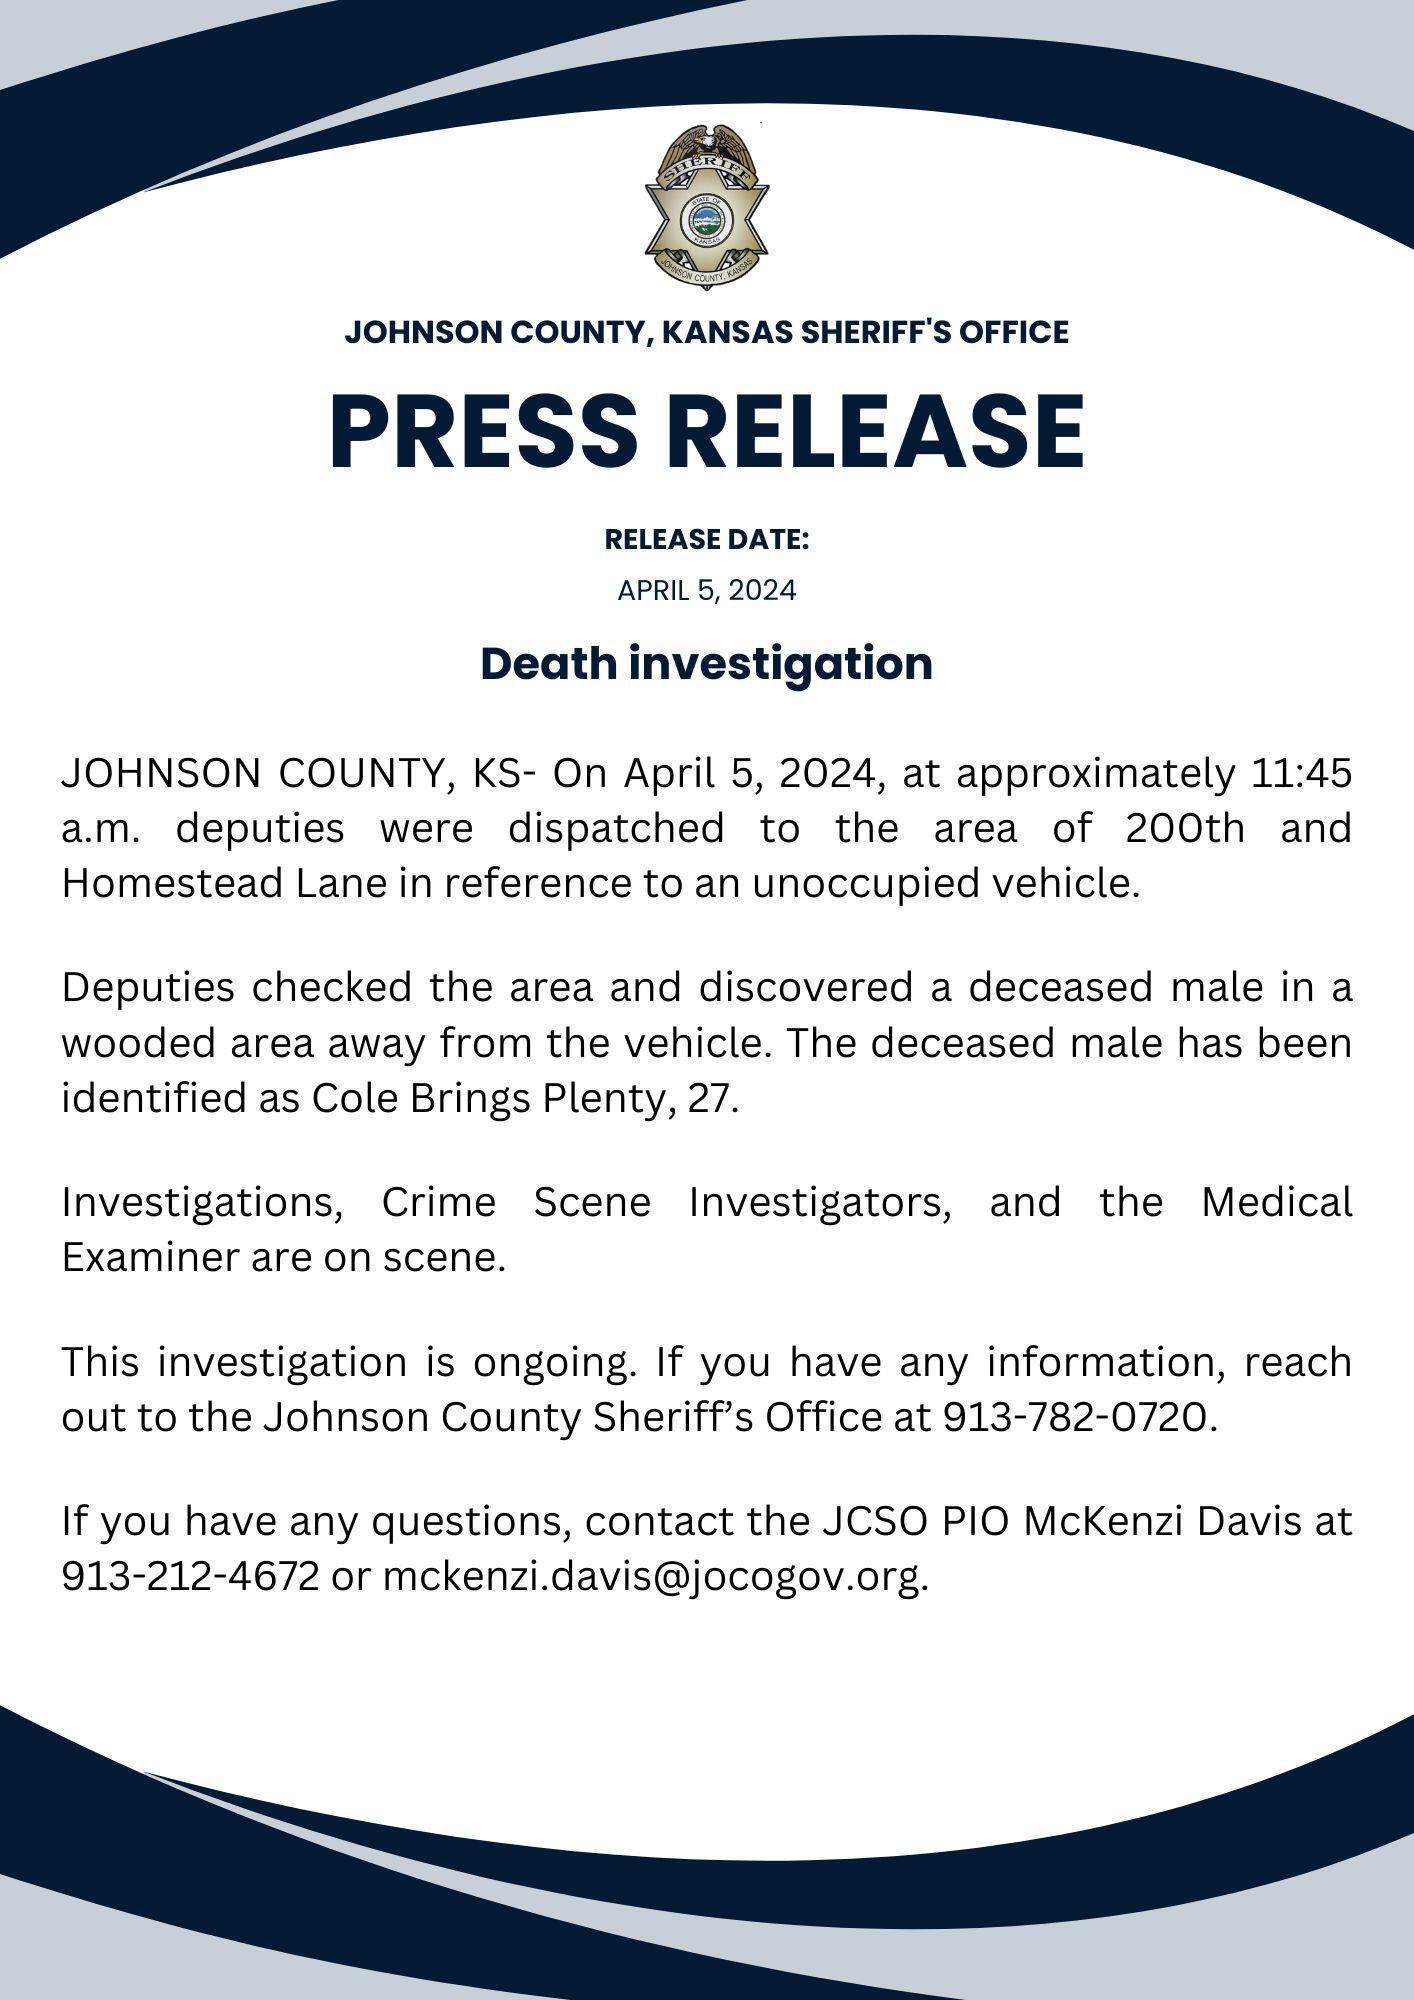 Comunicado del Johnson County, KS Sheriff's Office sobre la muerte del actor Cole Brings Plenty. (Foto: Johnson County, KS Sheriff's Office)